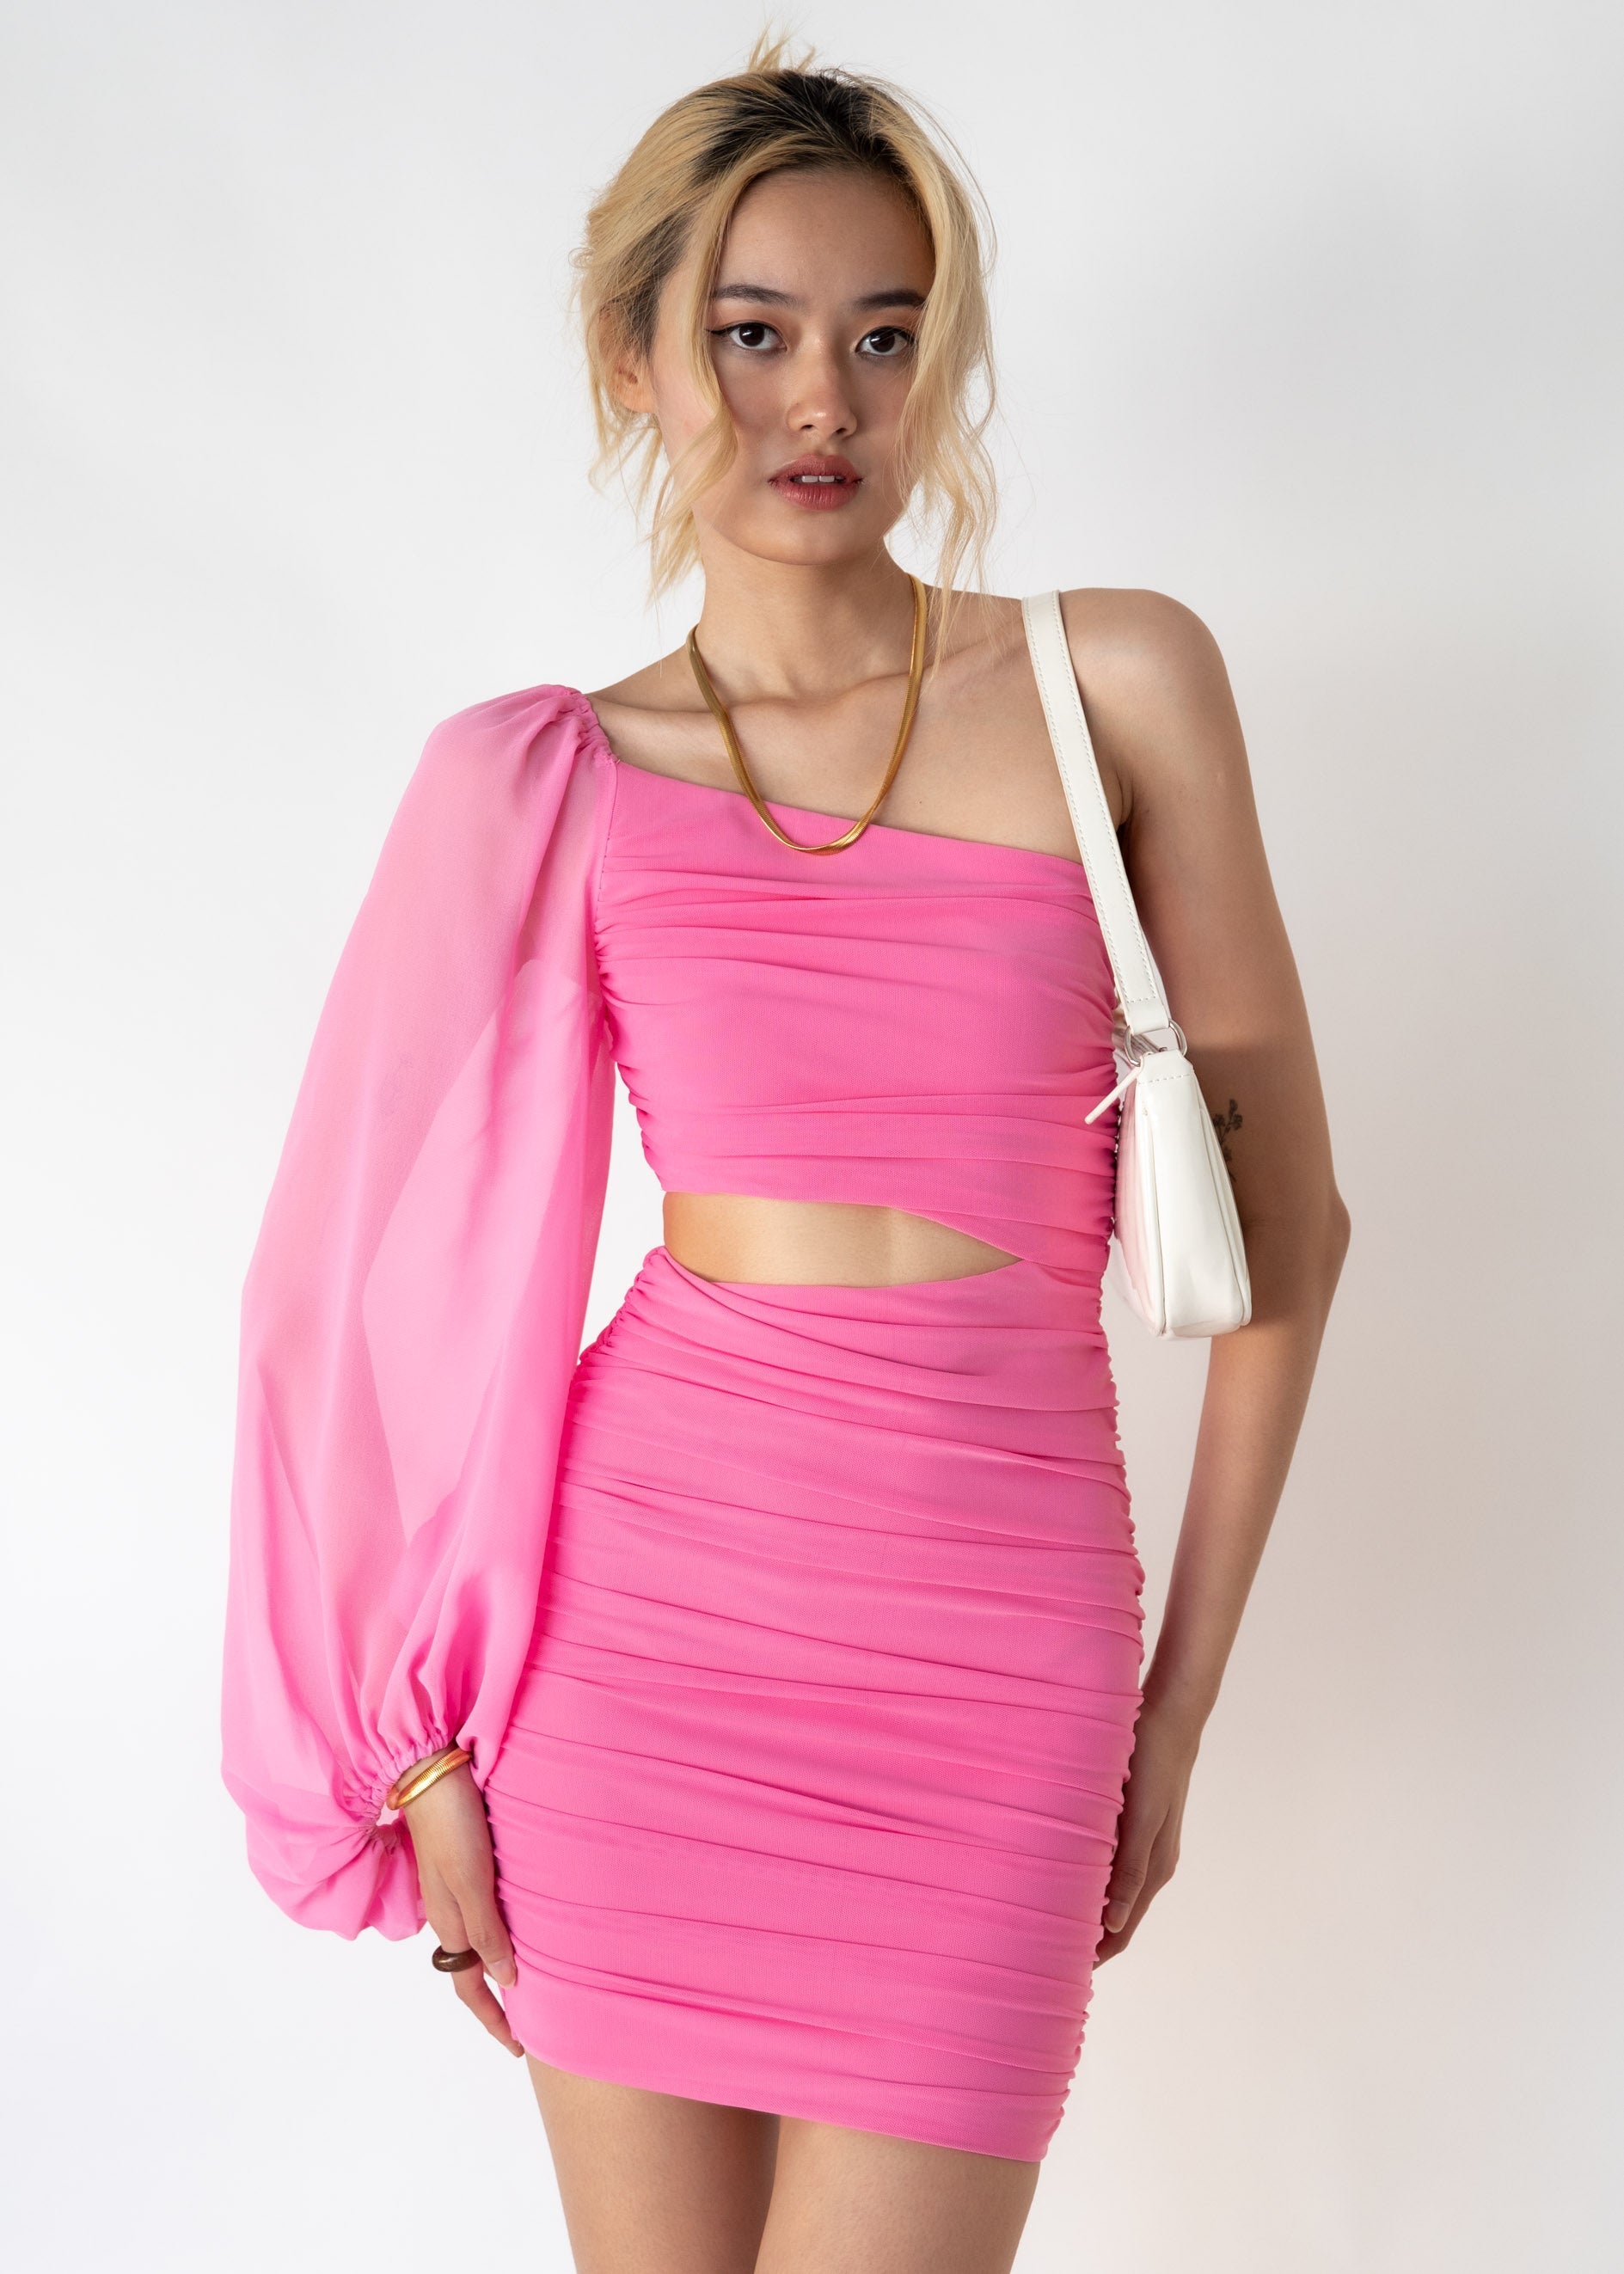 Barla One Shoulder Dress - Hot Pink